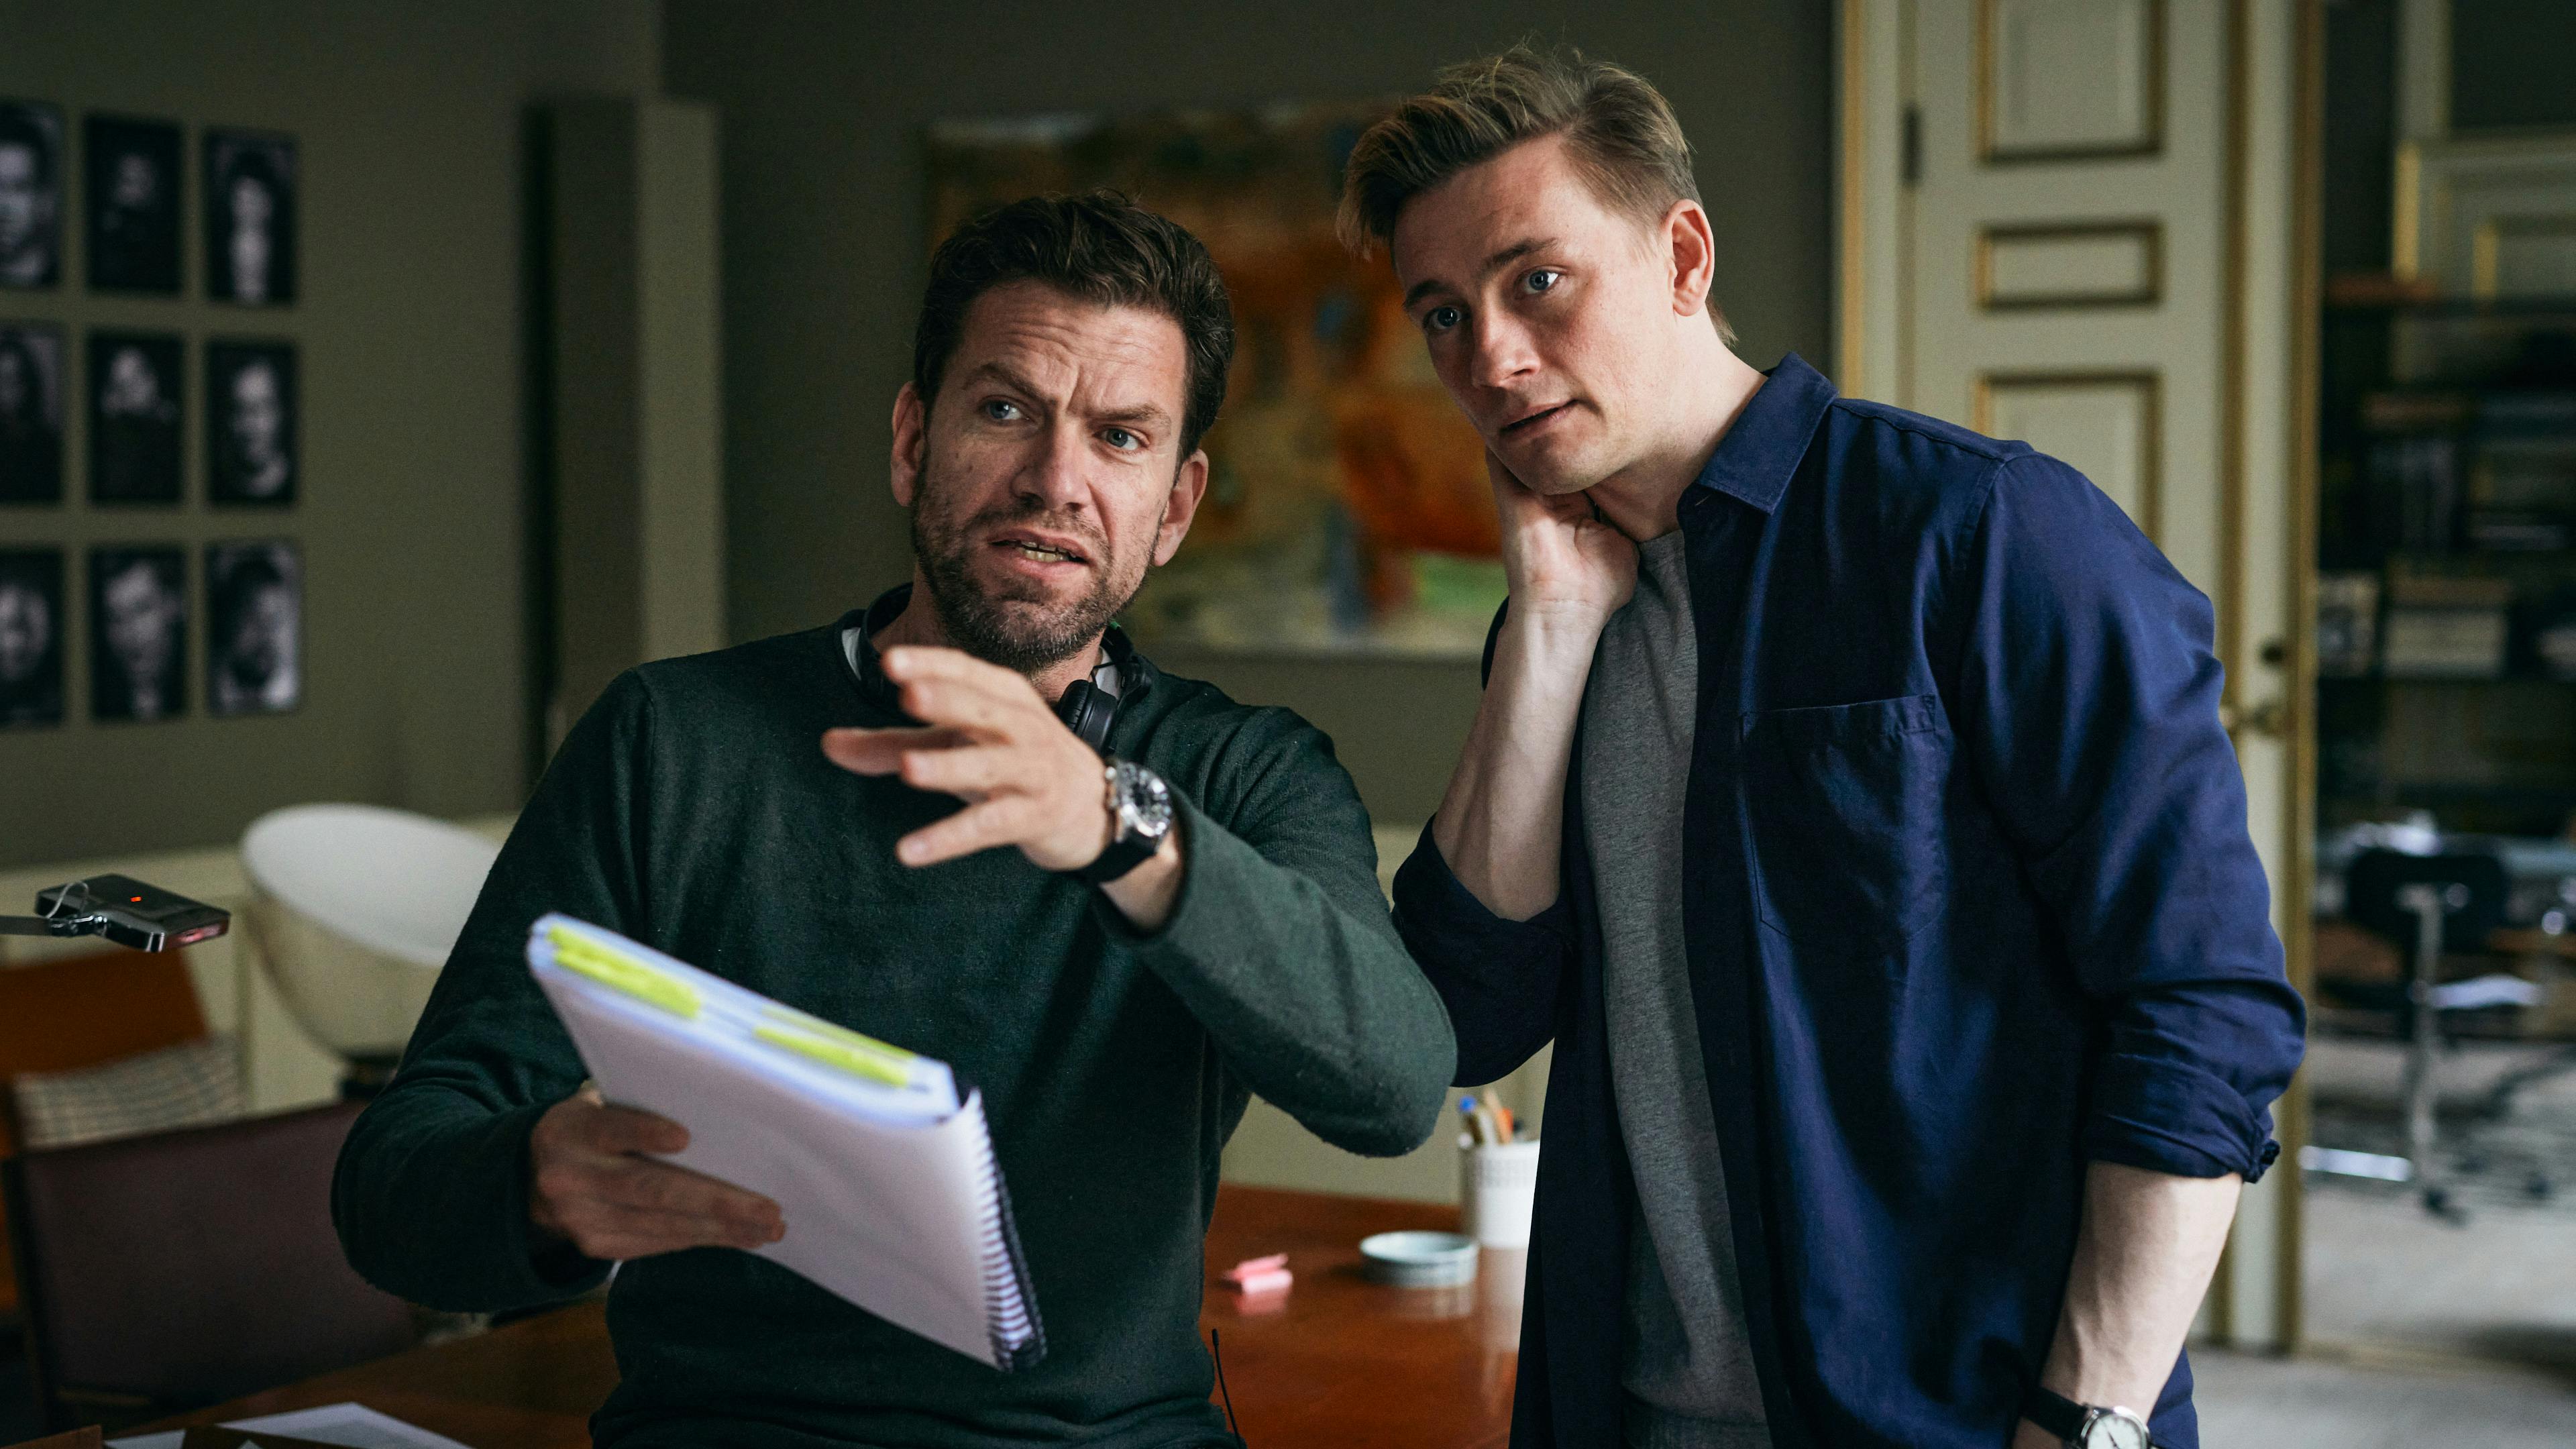 Nikolaj Lie Kaas og Esben Smed under optagelserne til den nye dramakomedieserie ’Agent’, som får premiere på TV 2 PLAY og TV 2 i 2023.
